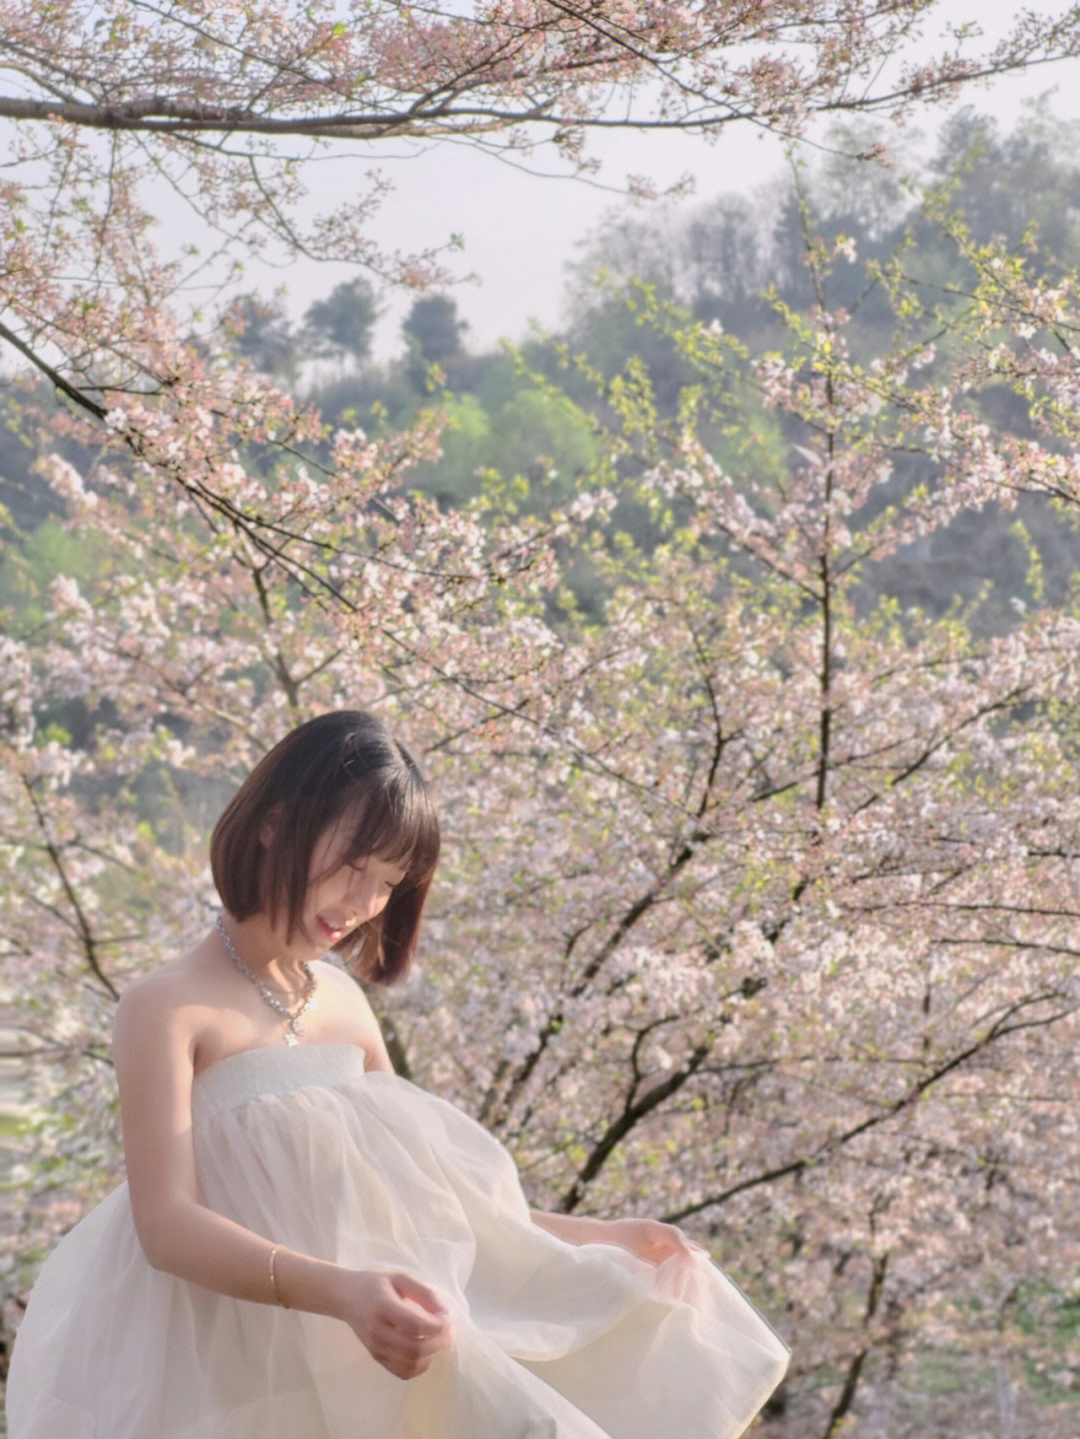 我与樱花合影图片